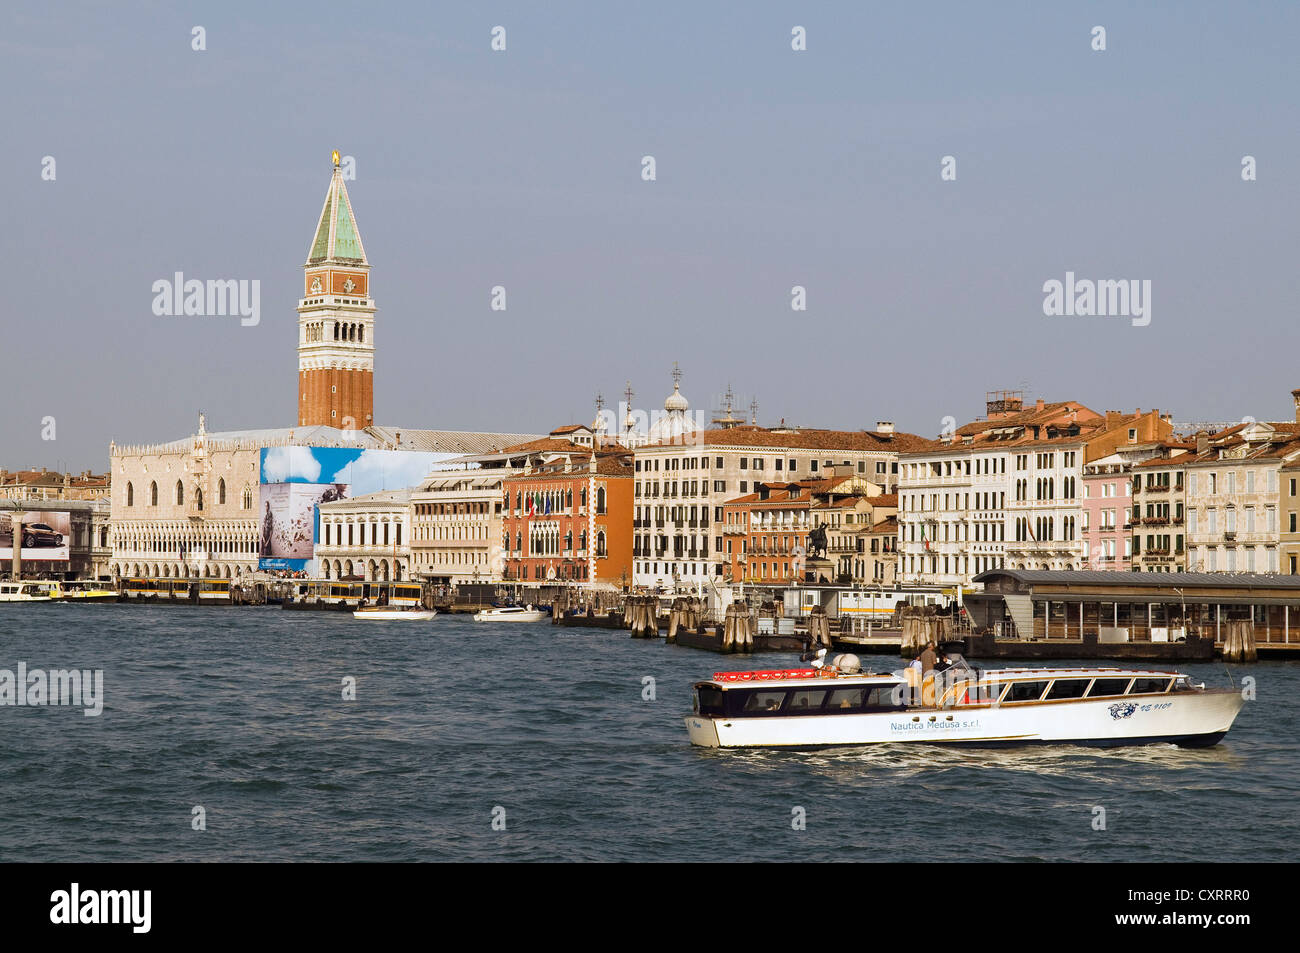 Les bateaux-taxis et les ferries dans le port de Venise, avec le campanile de Saint Marc et du Palais des Doges à l'arrière, Venise, Vénétie, Italie Banque D'Images